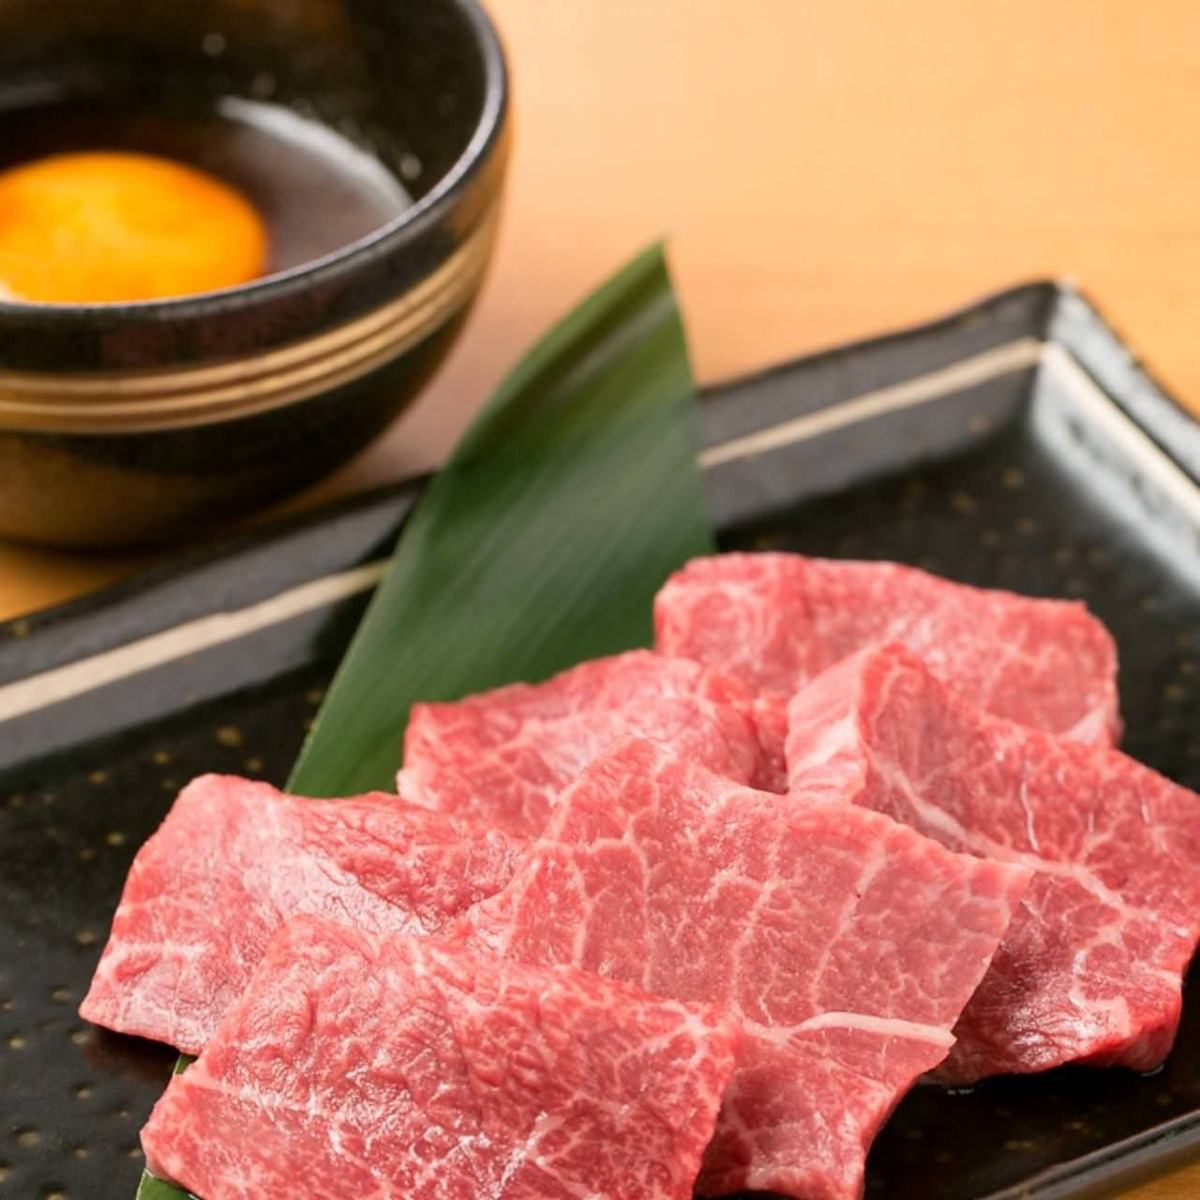 請在我們的商店享用幻影的日本牛肉“大崎牛肉”。